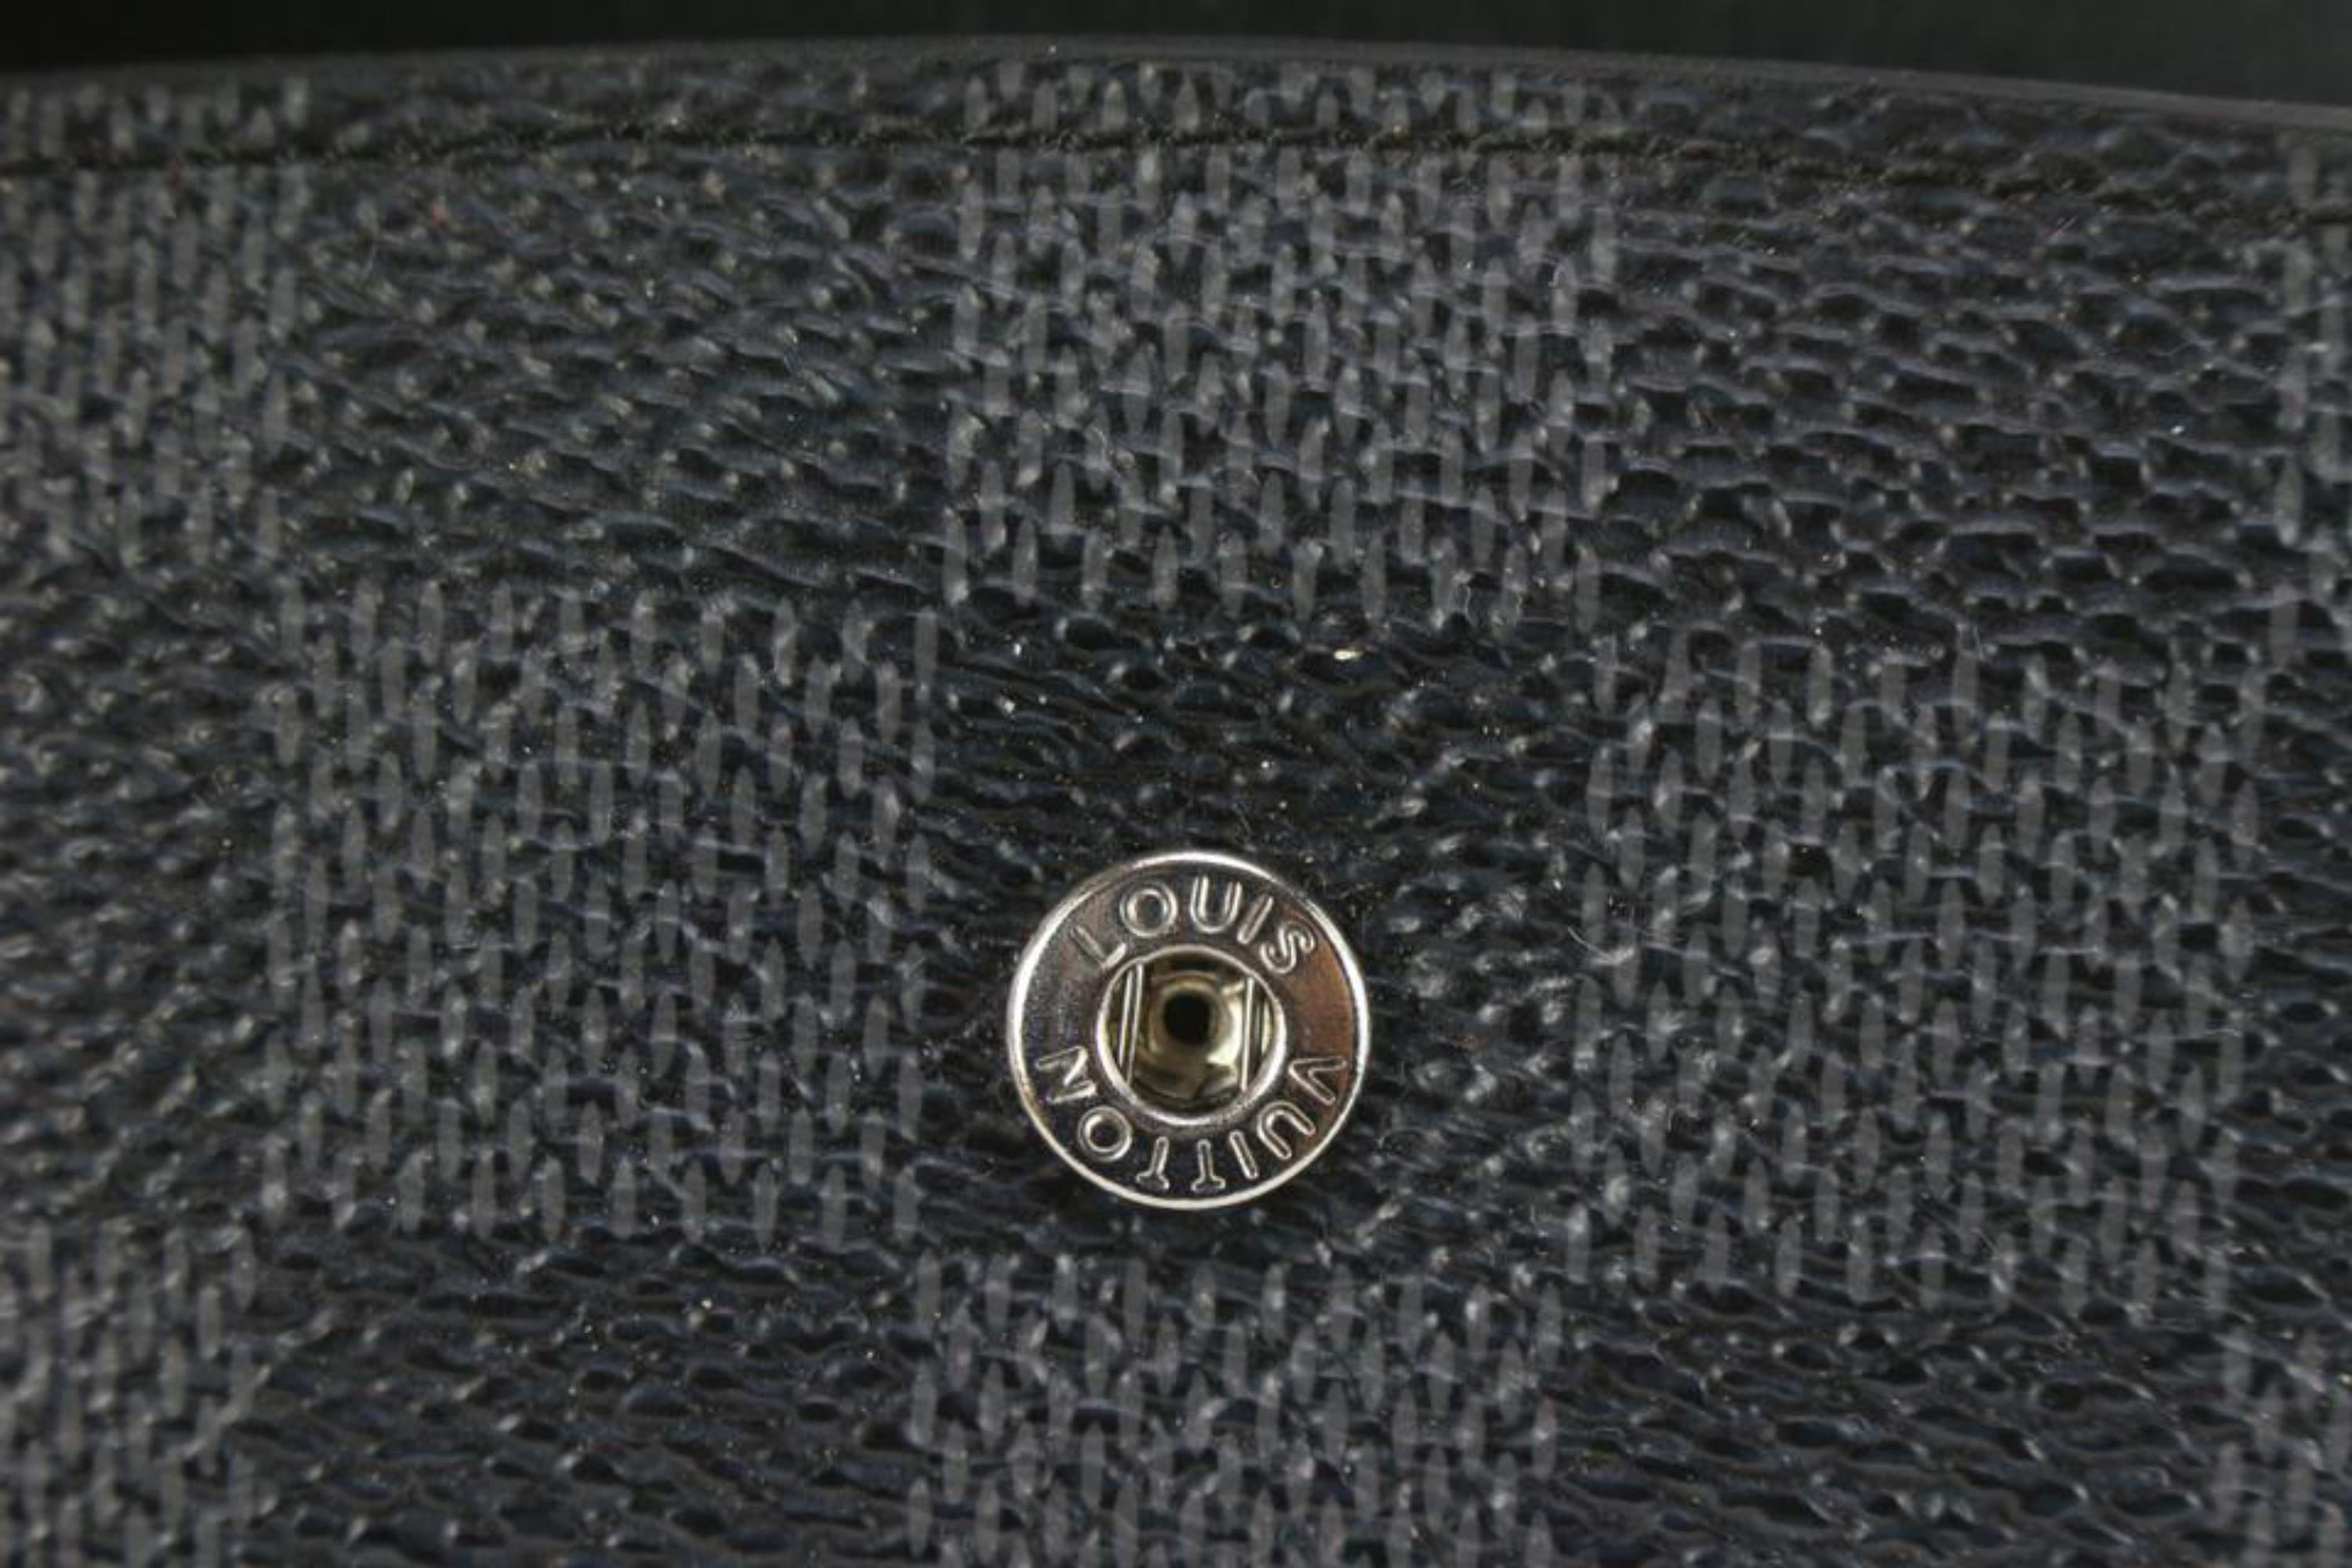 Louis Vuitton Damier Graphite Cufflink Pouch Case Holder 96lk616s –  Bagriculture